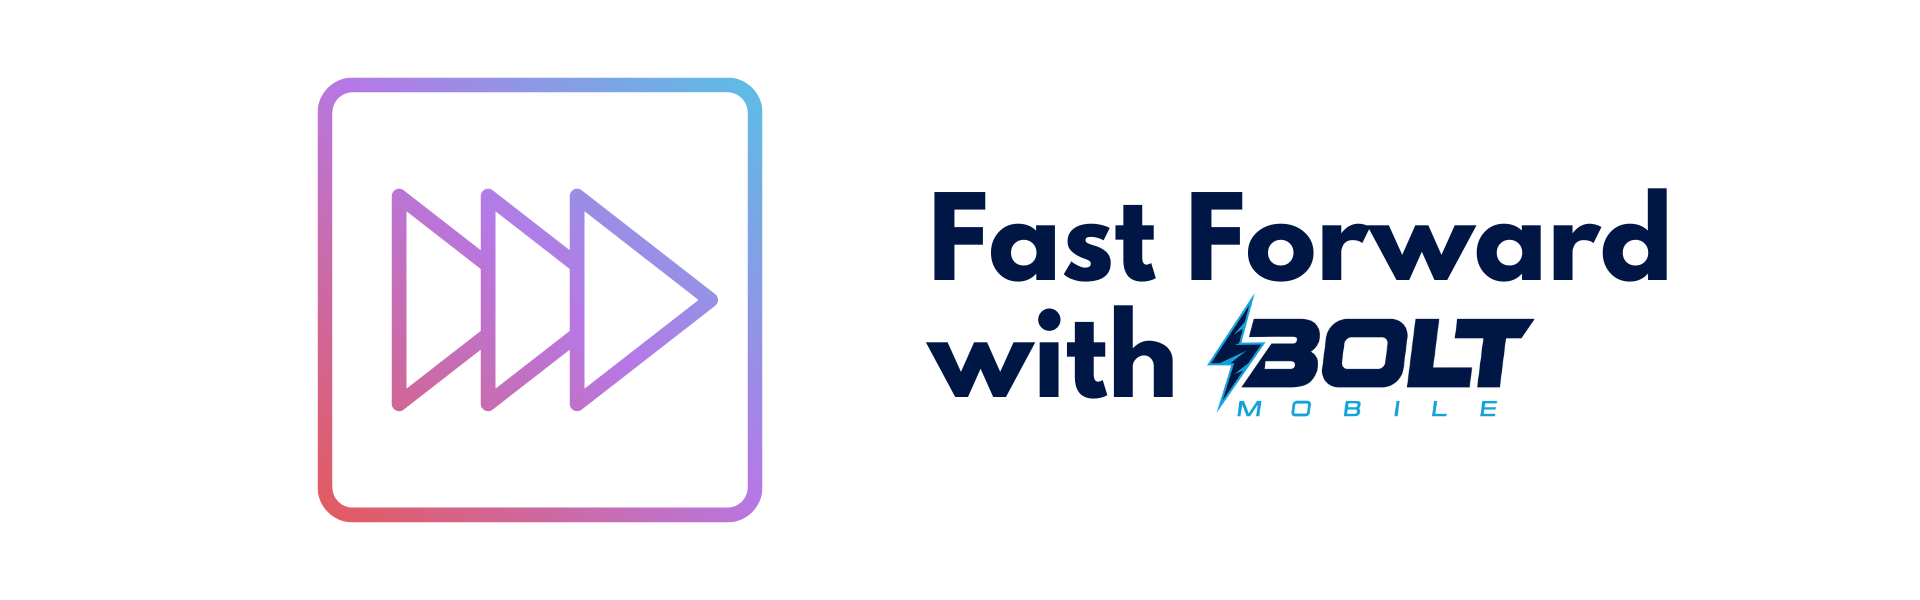 Fast Forward - Bolt Mobile - Website Header